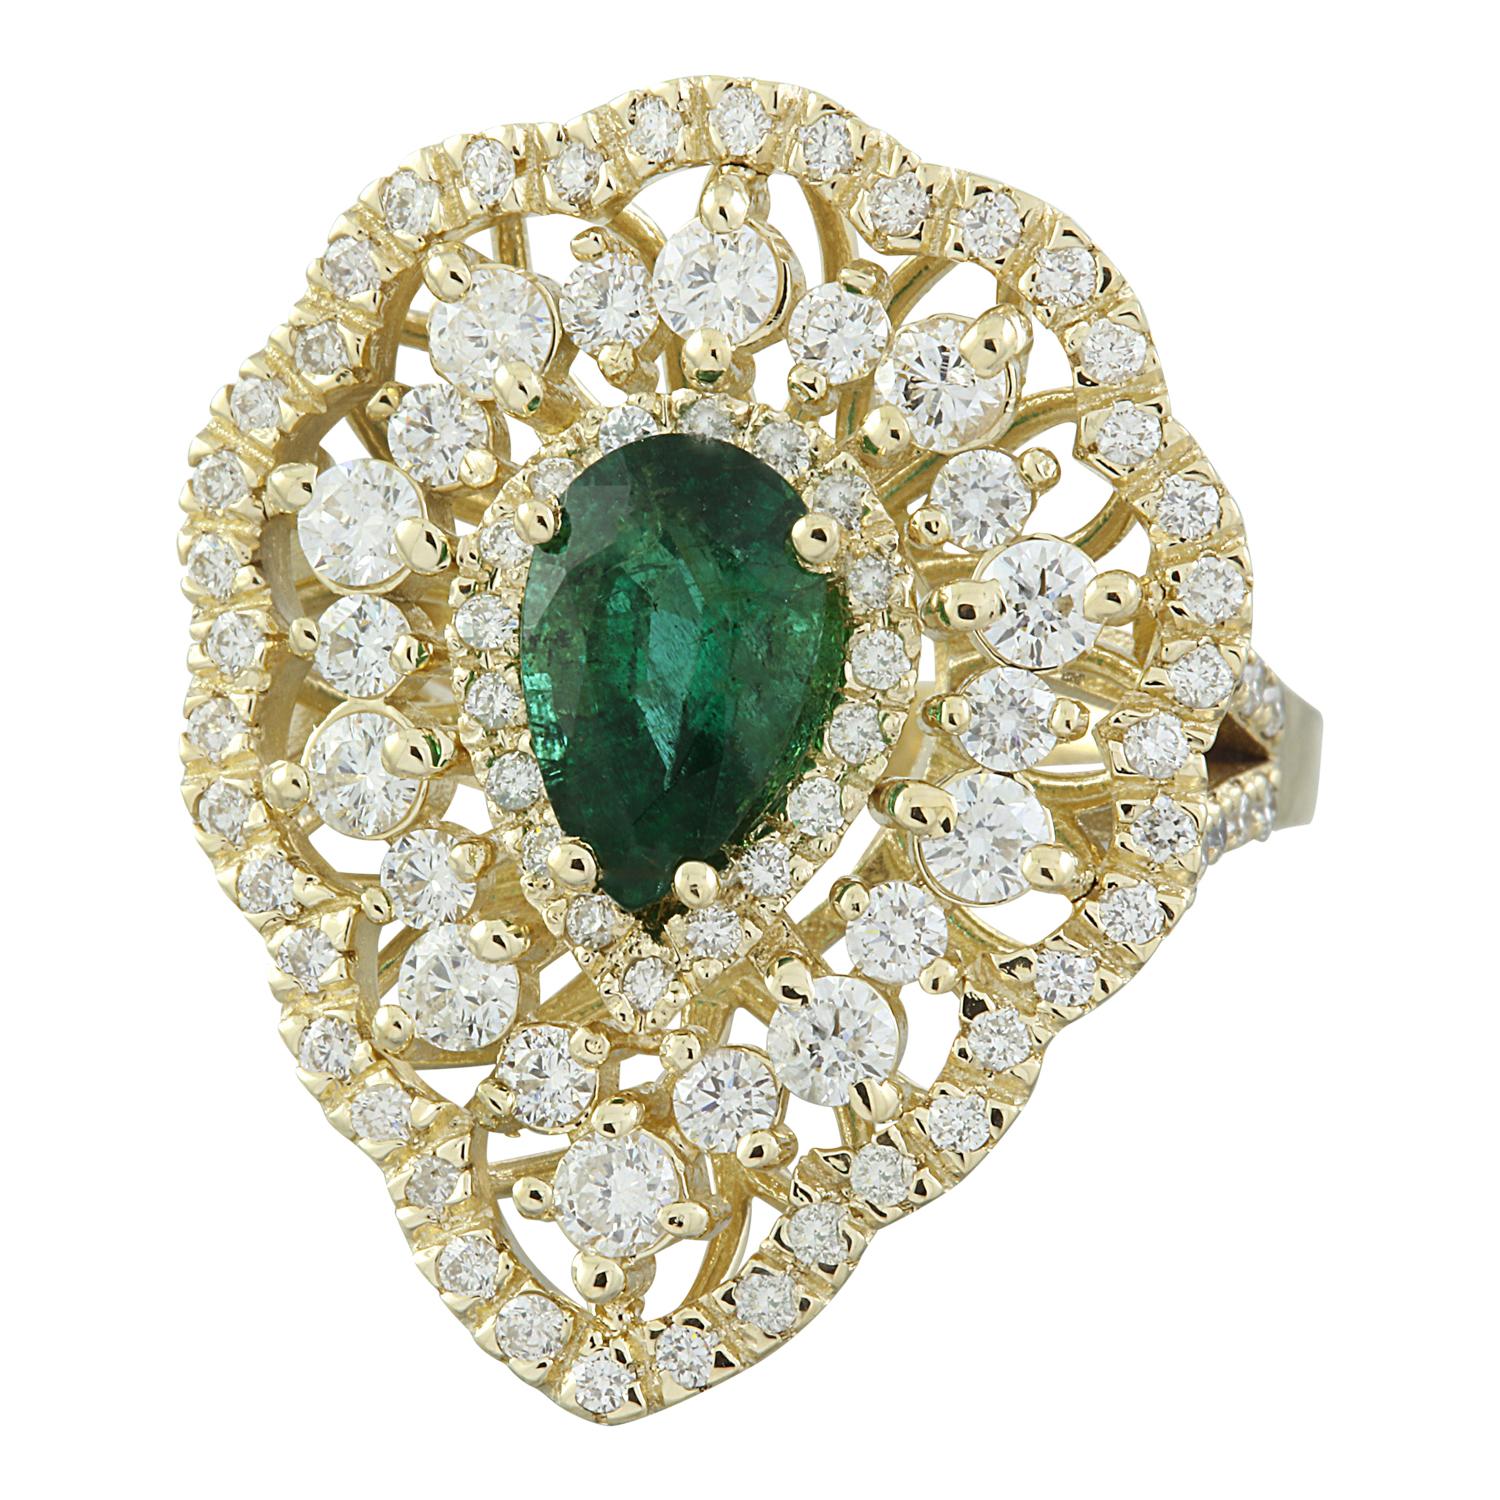 3.41 Carat Nature Emerald 14 Karat Solid Yellow Gold Diamond Ring
Estampillé : 14K 
Poids total de l'anneau : 10,2 grammes 
Poids de l'émeraude 1,61 carat (9,00x6,00 millimètres)
Poids du diamant : 1,80 carat (couleur F-G, pureté VS2-SI1)
Mesures de